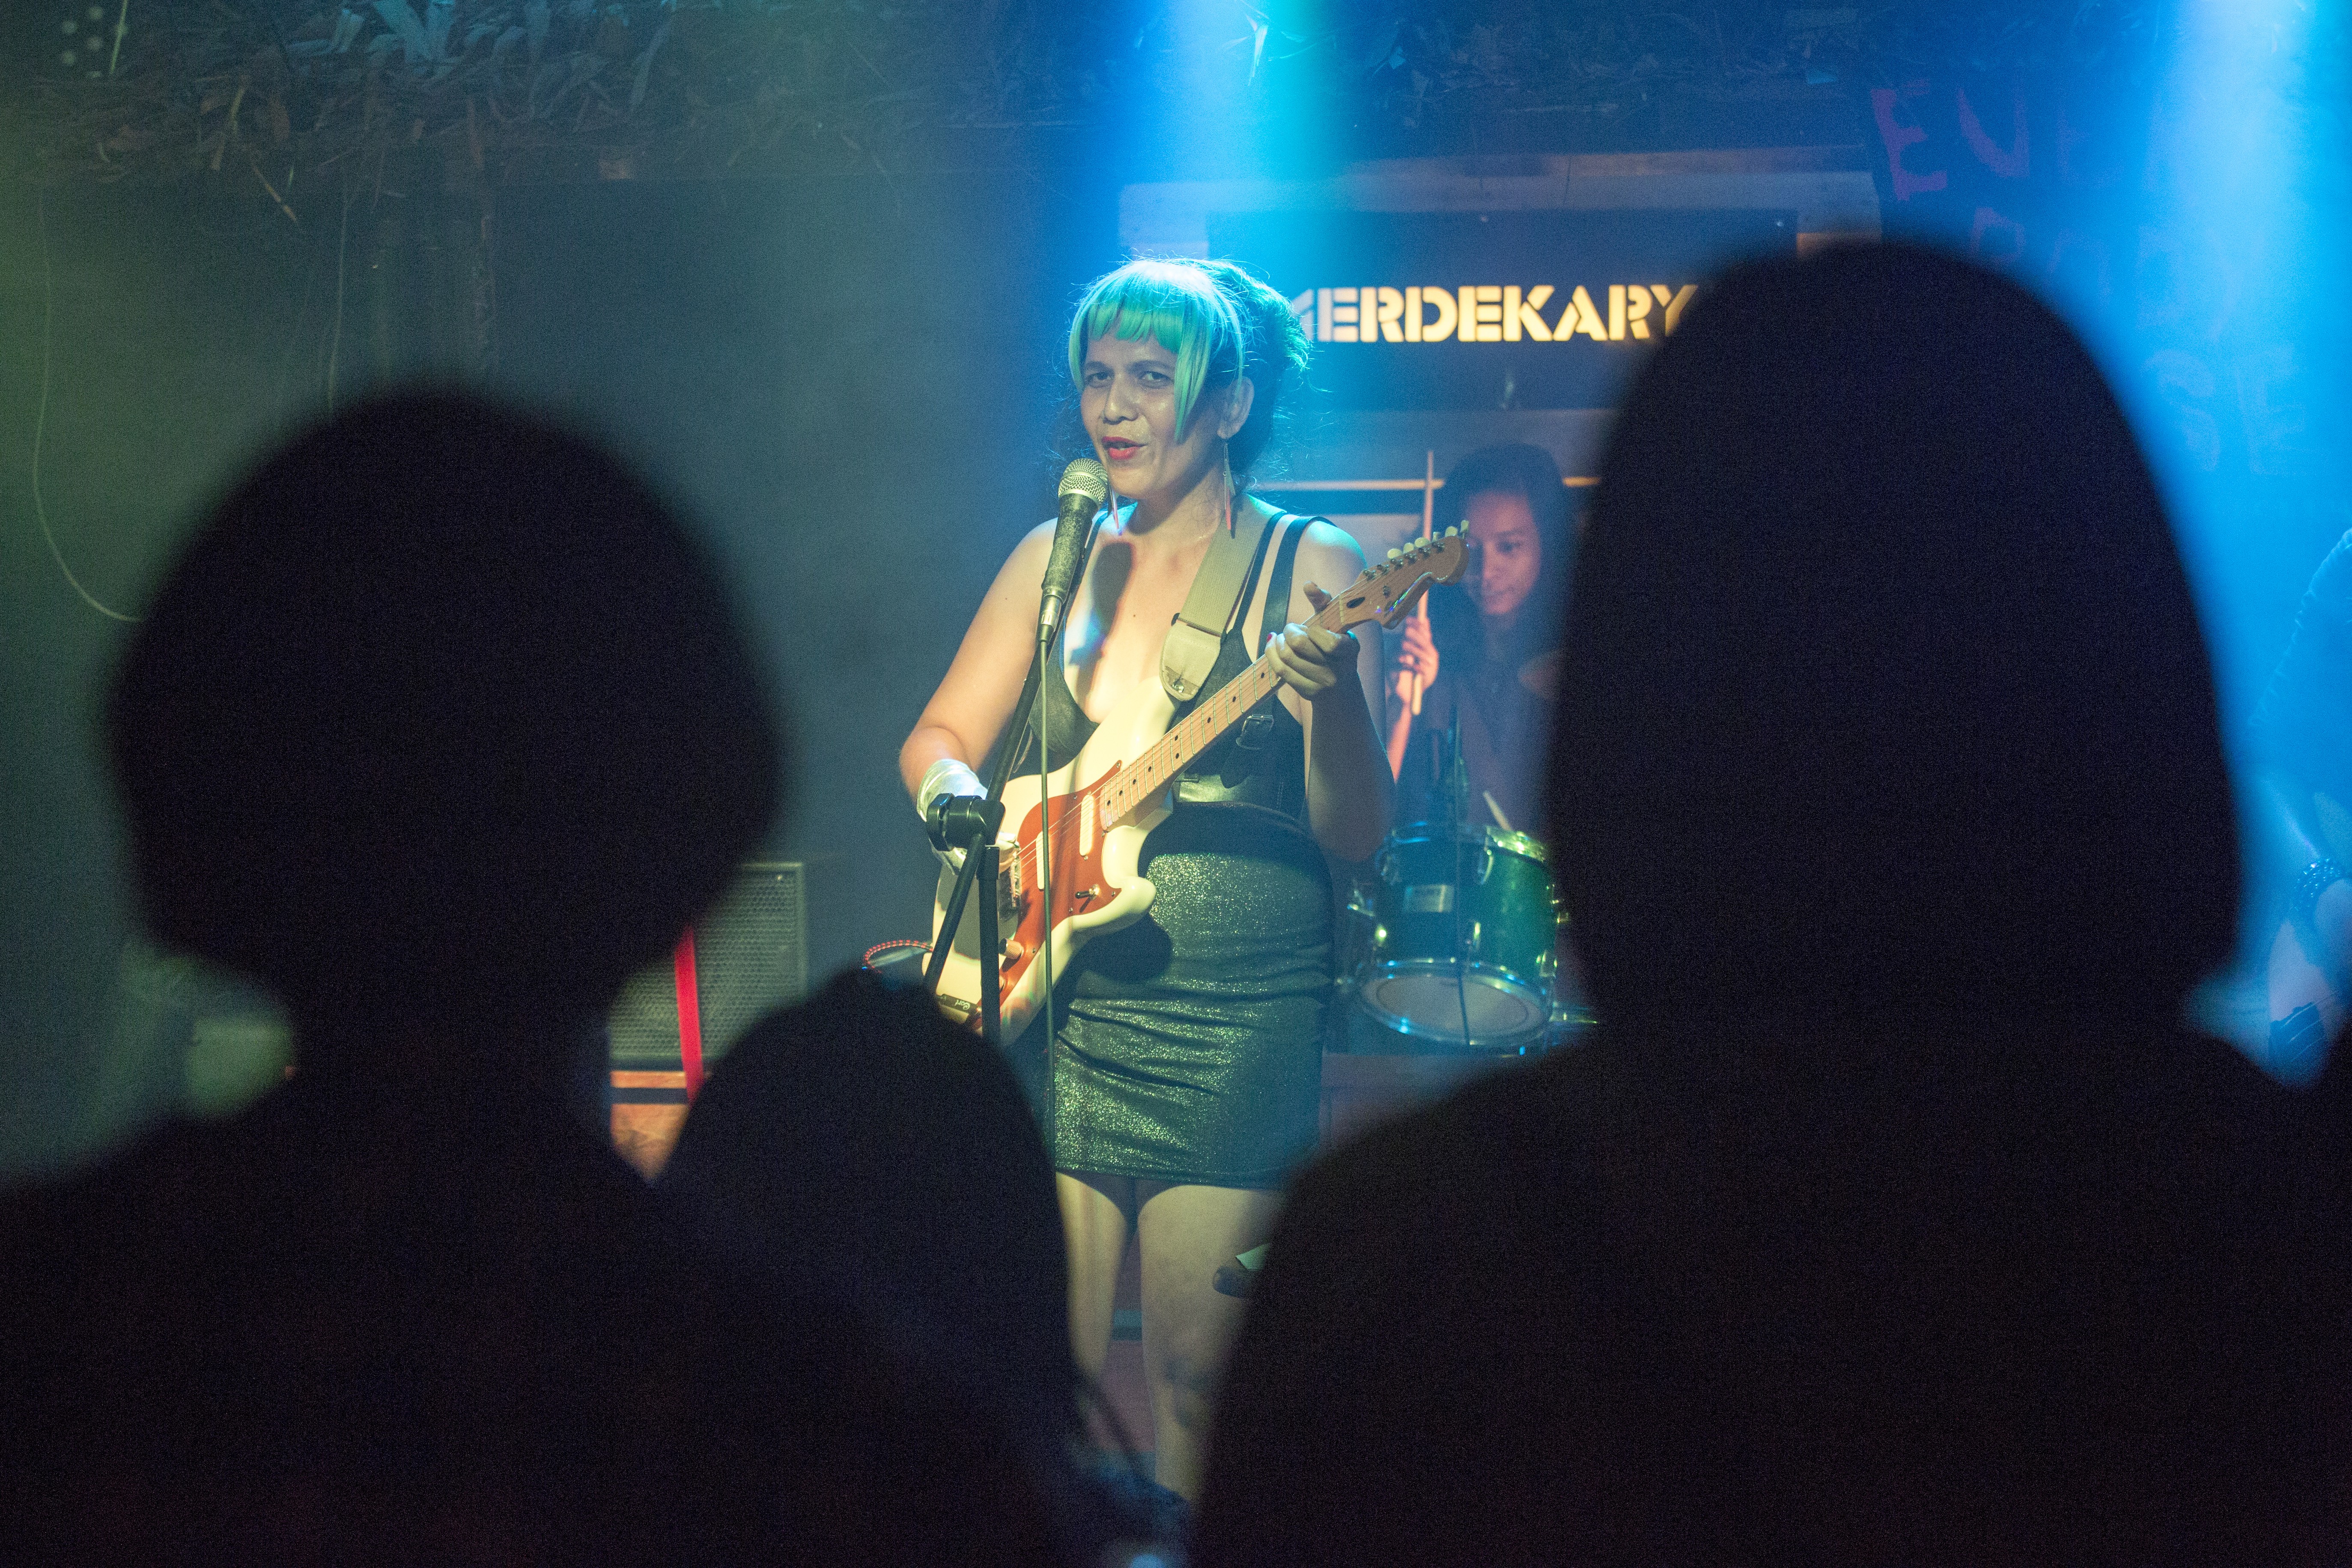 Shika and her band Tingtong Ketz perform at an event in Kuala Lumpur. Photo: Alexandra Radu